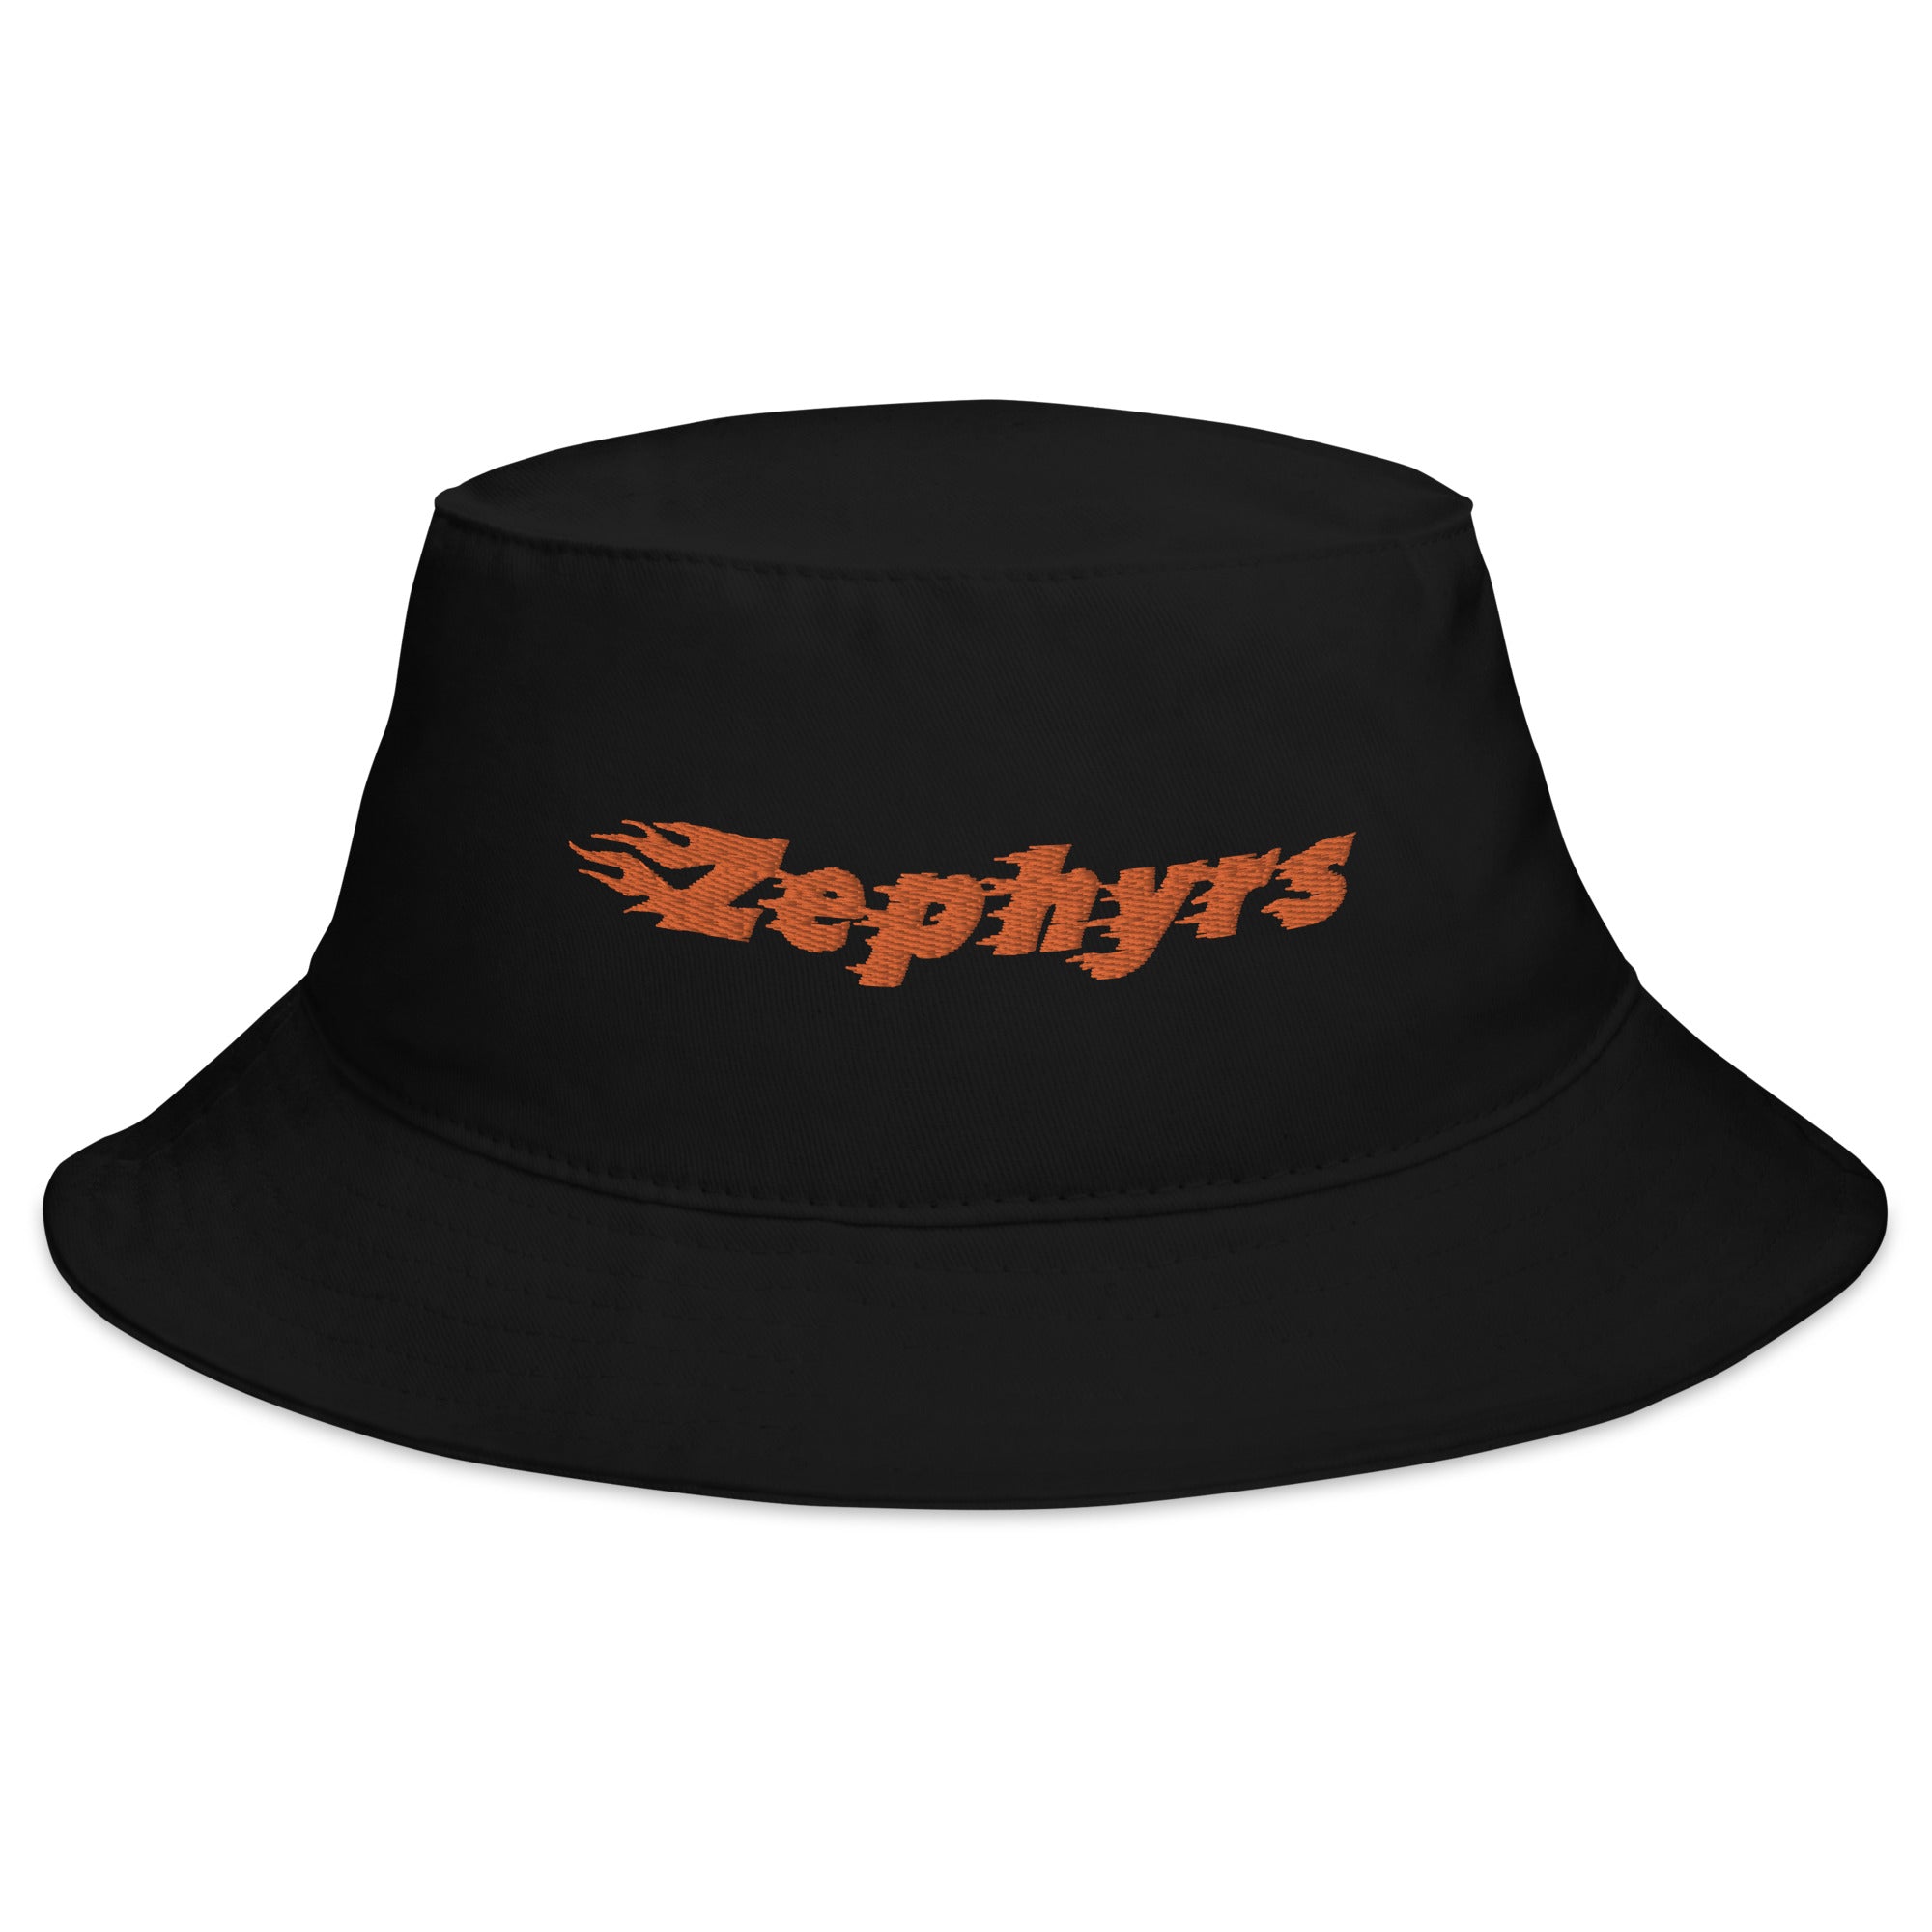 Zephyrs Bucket Hat